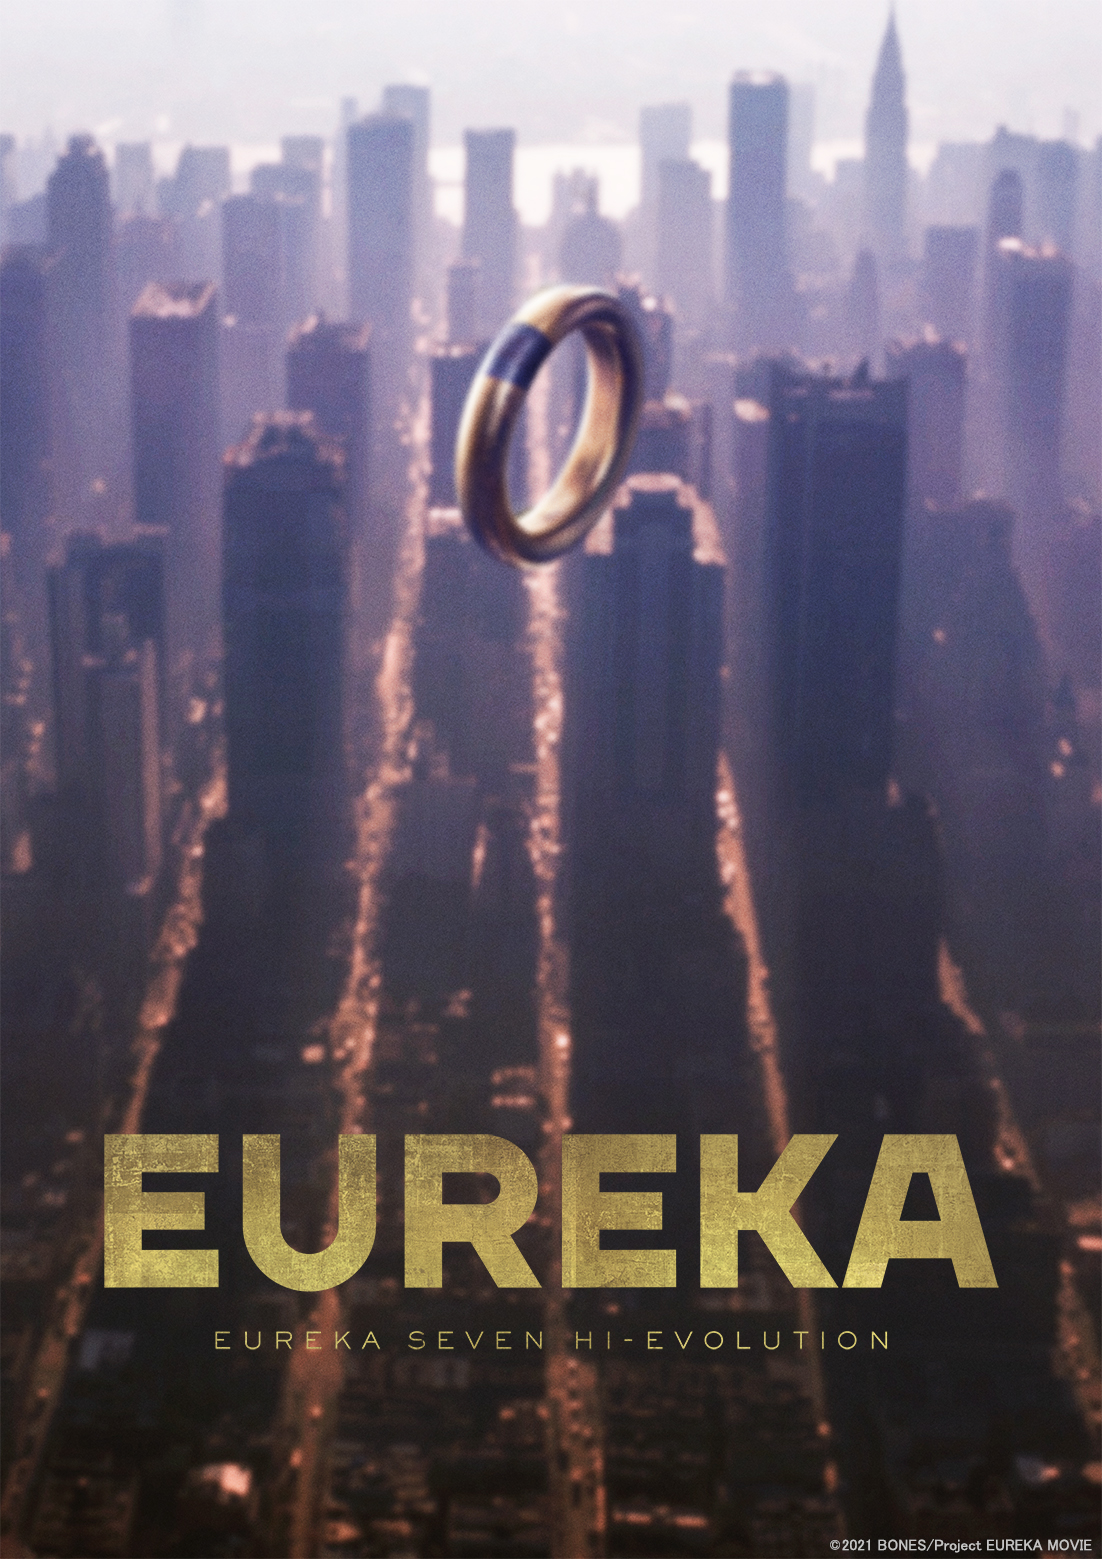 The Final Eureka Seven Film lança novo trailer e visual: estreia no verão de 2021